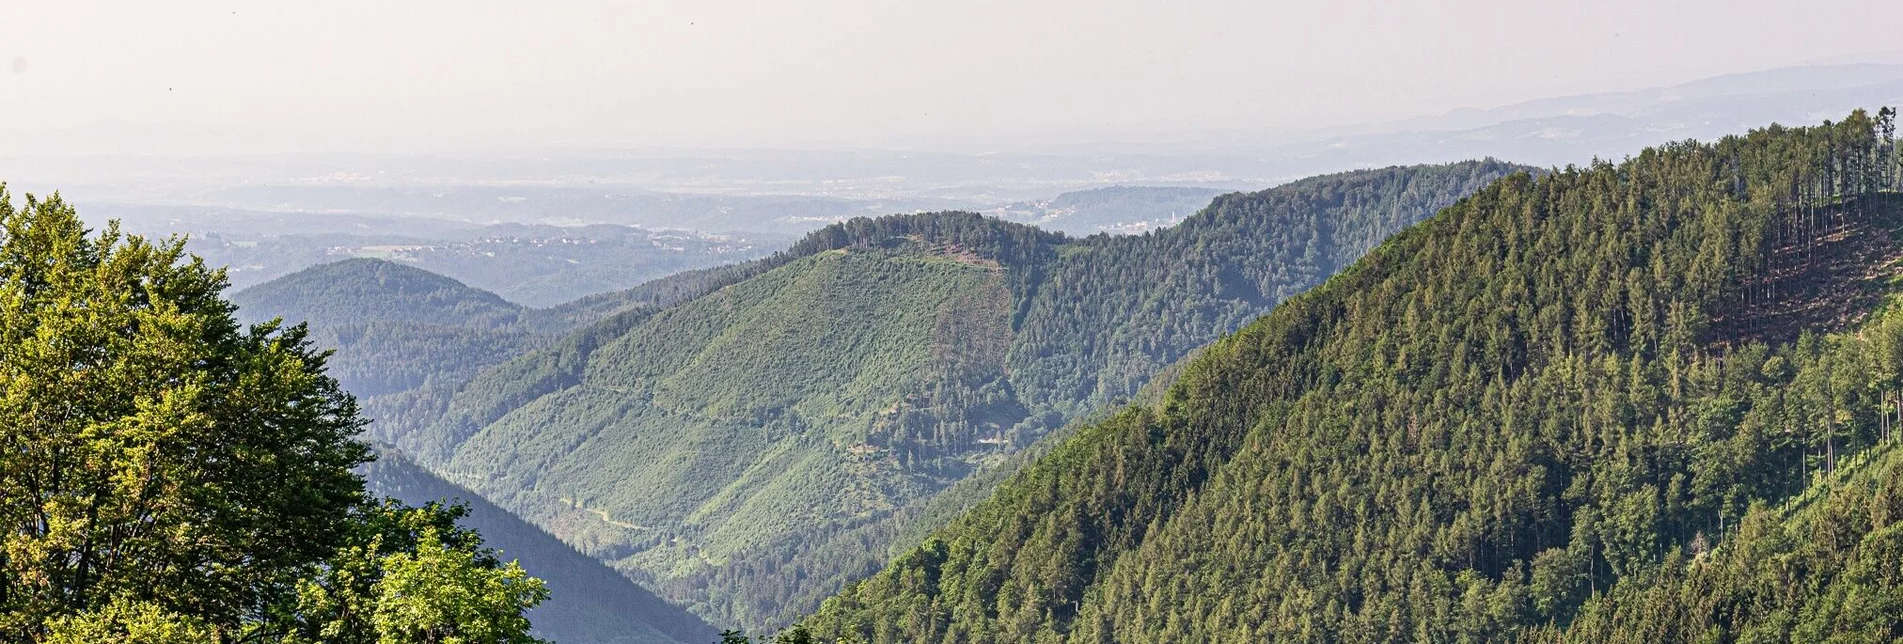 Hiking route Mountain hike across “four thousanders” - Touren-Impression #1 | © Region Graz